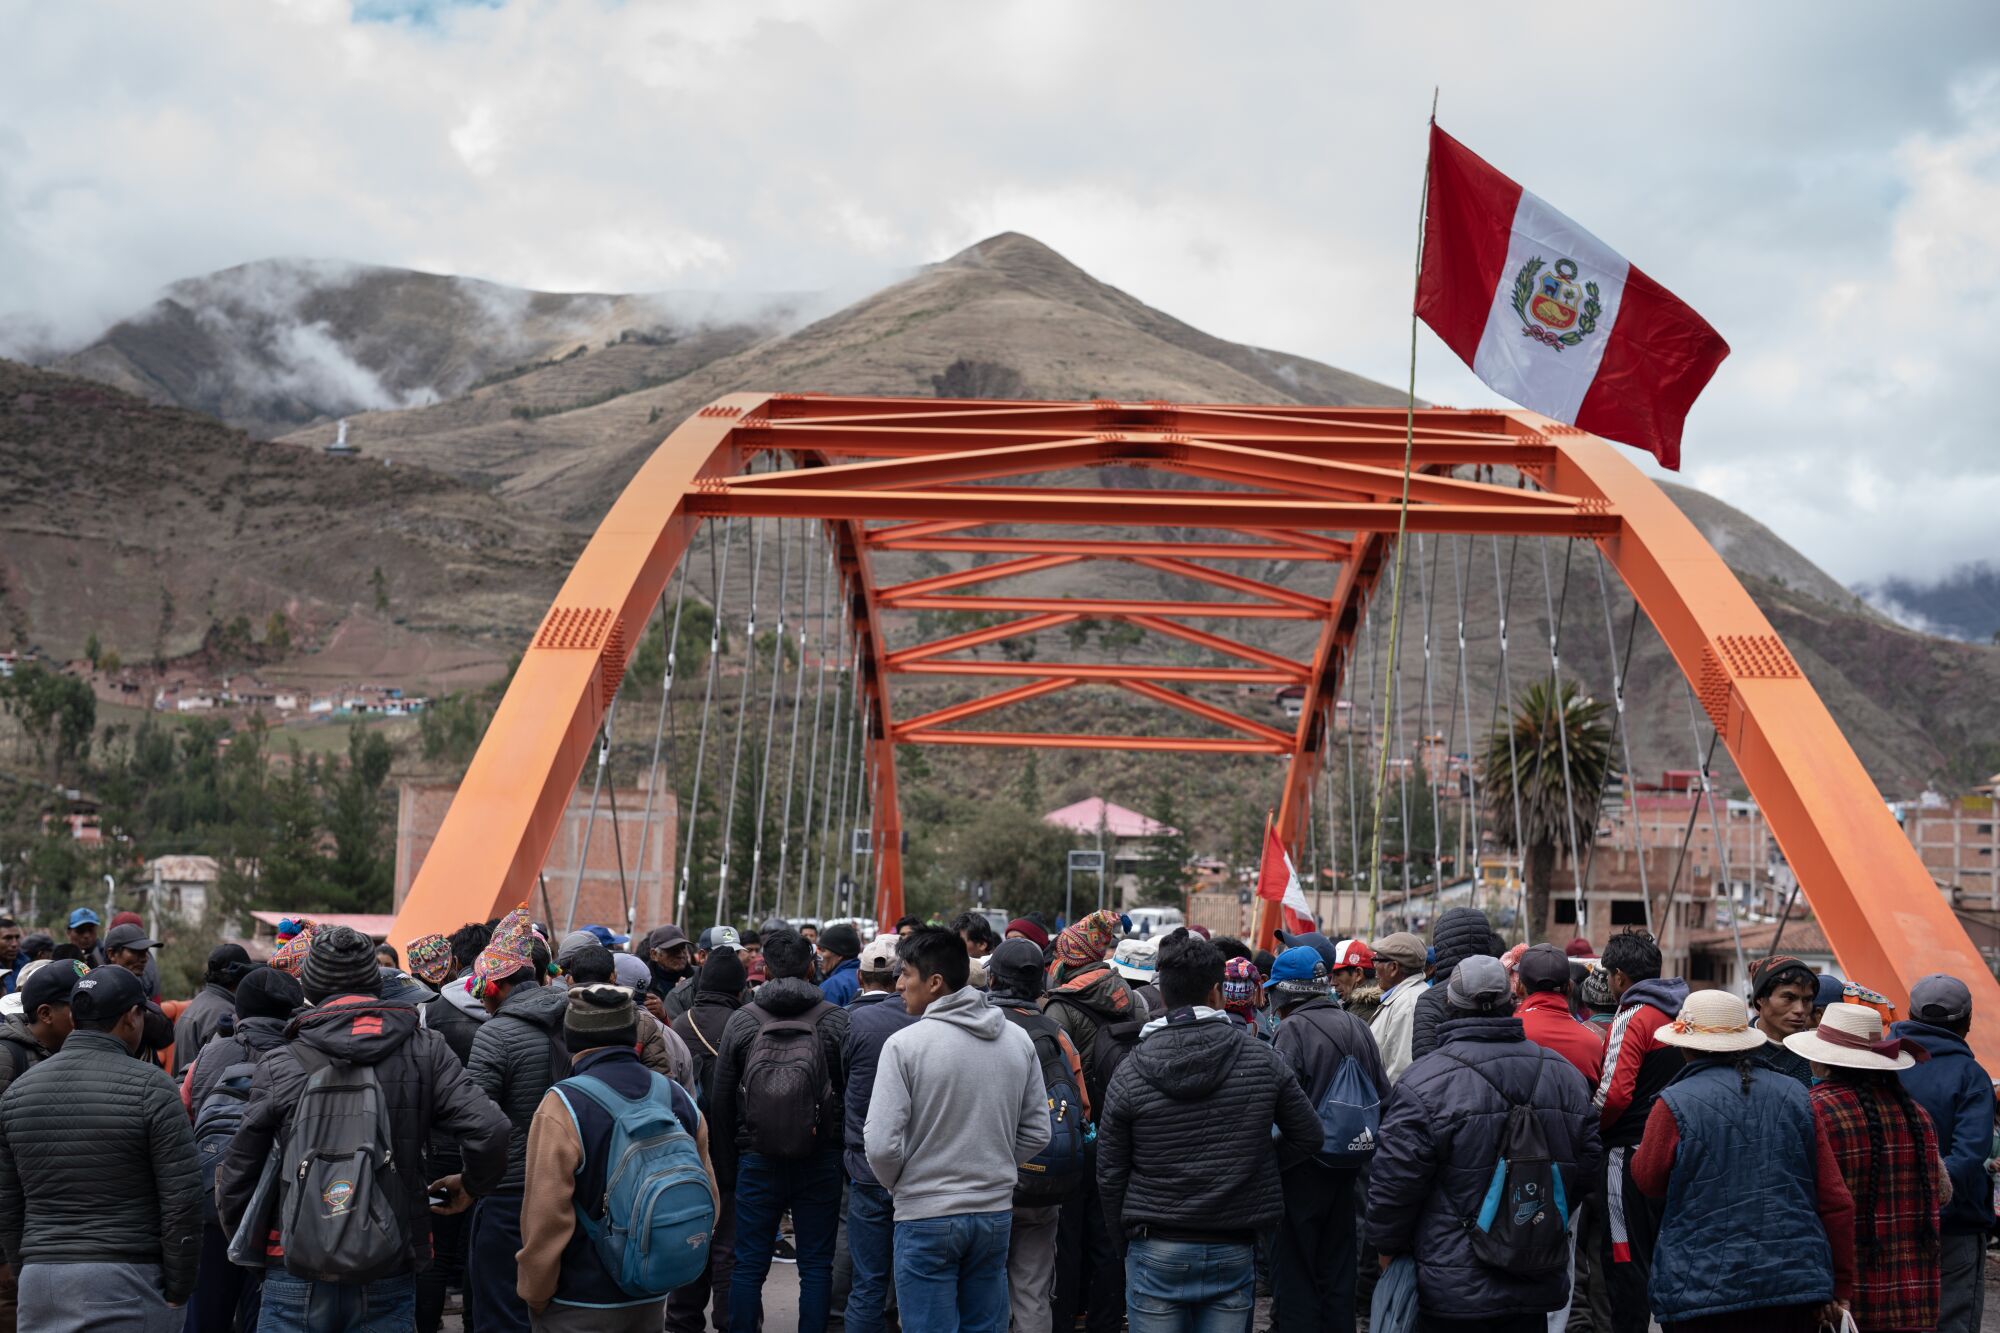 Protesters block a bridge in Urcos, Peru